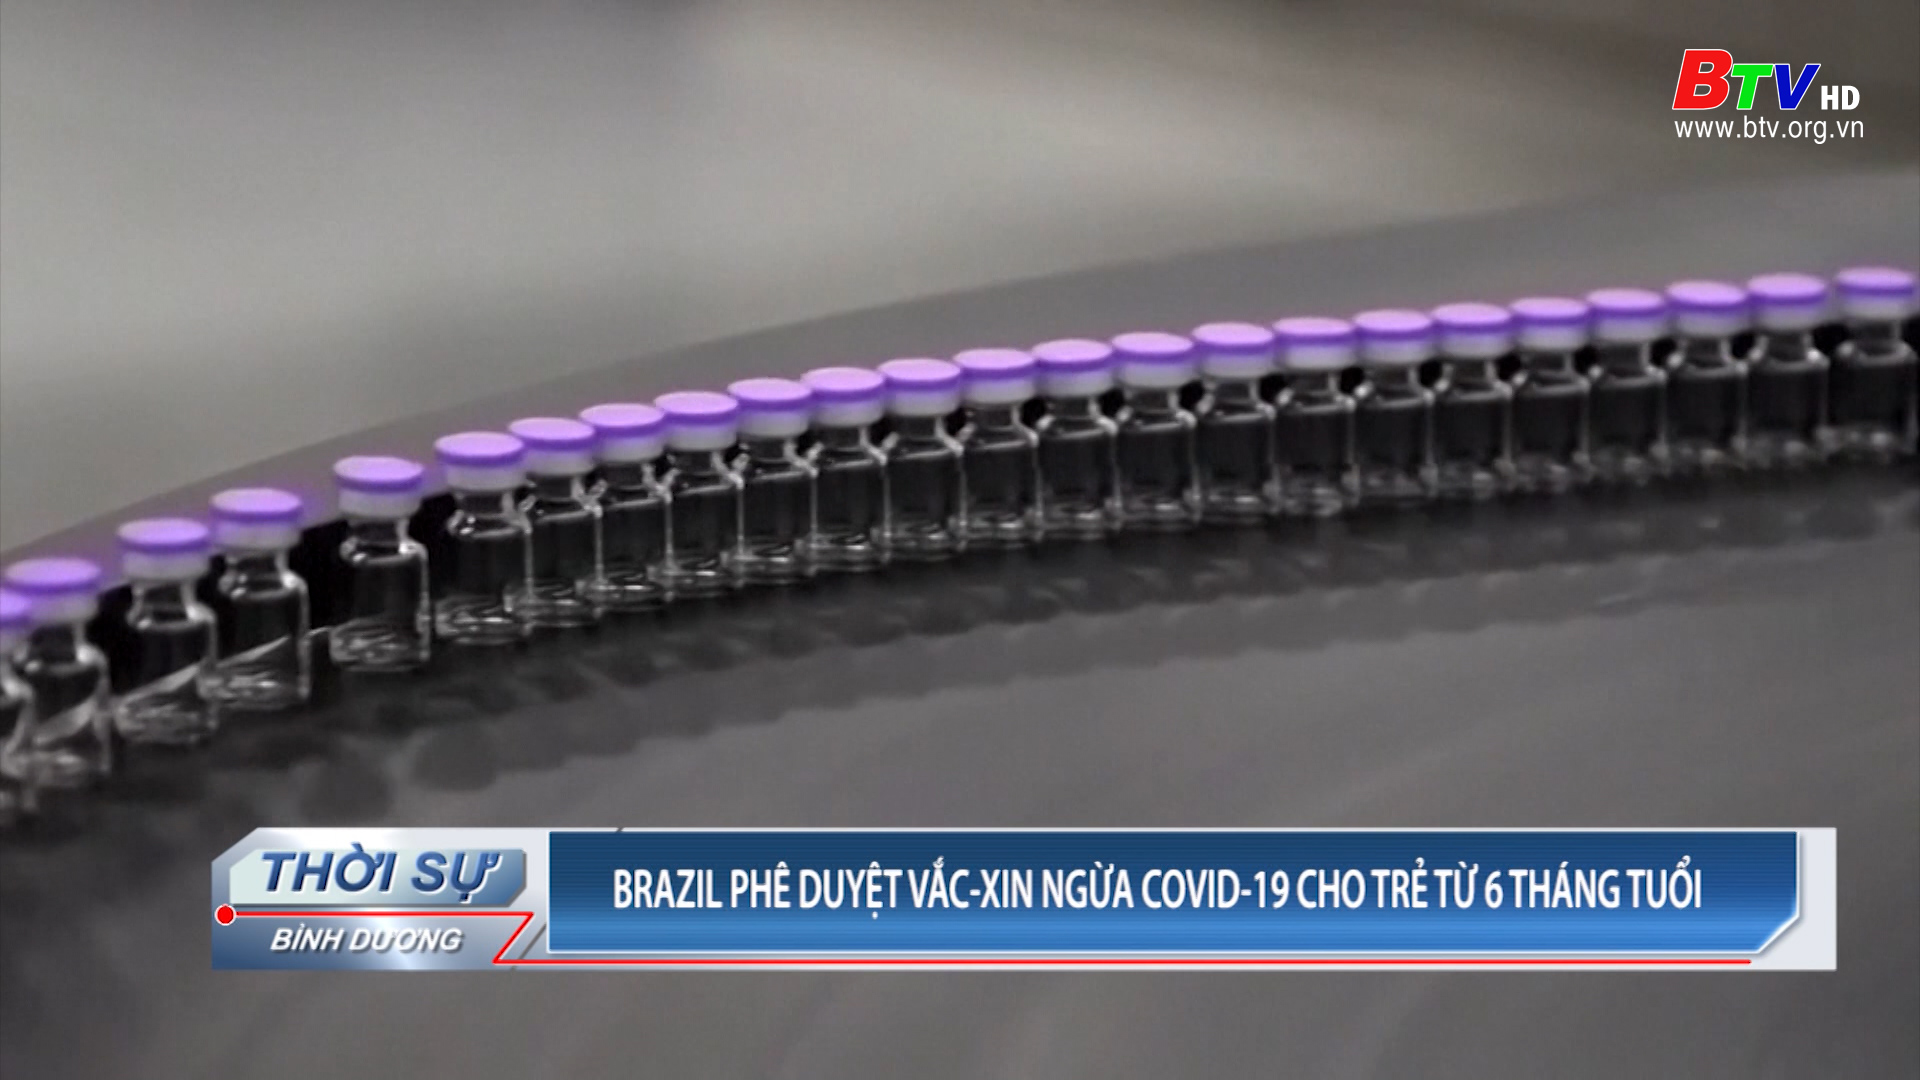 Brazil phê duyệt vắc xin ngừa Covid-19 cho trẻ từ 6 tháng tuổi